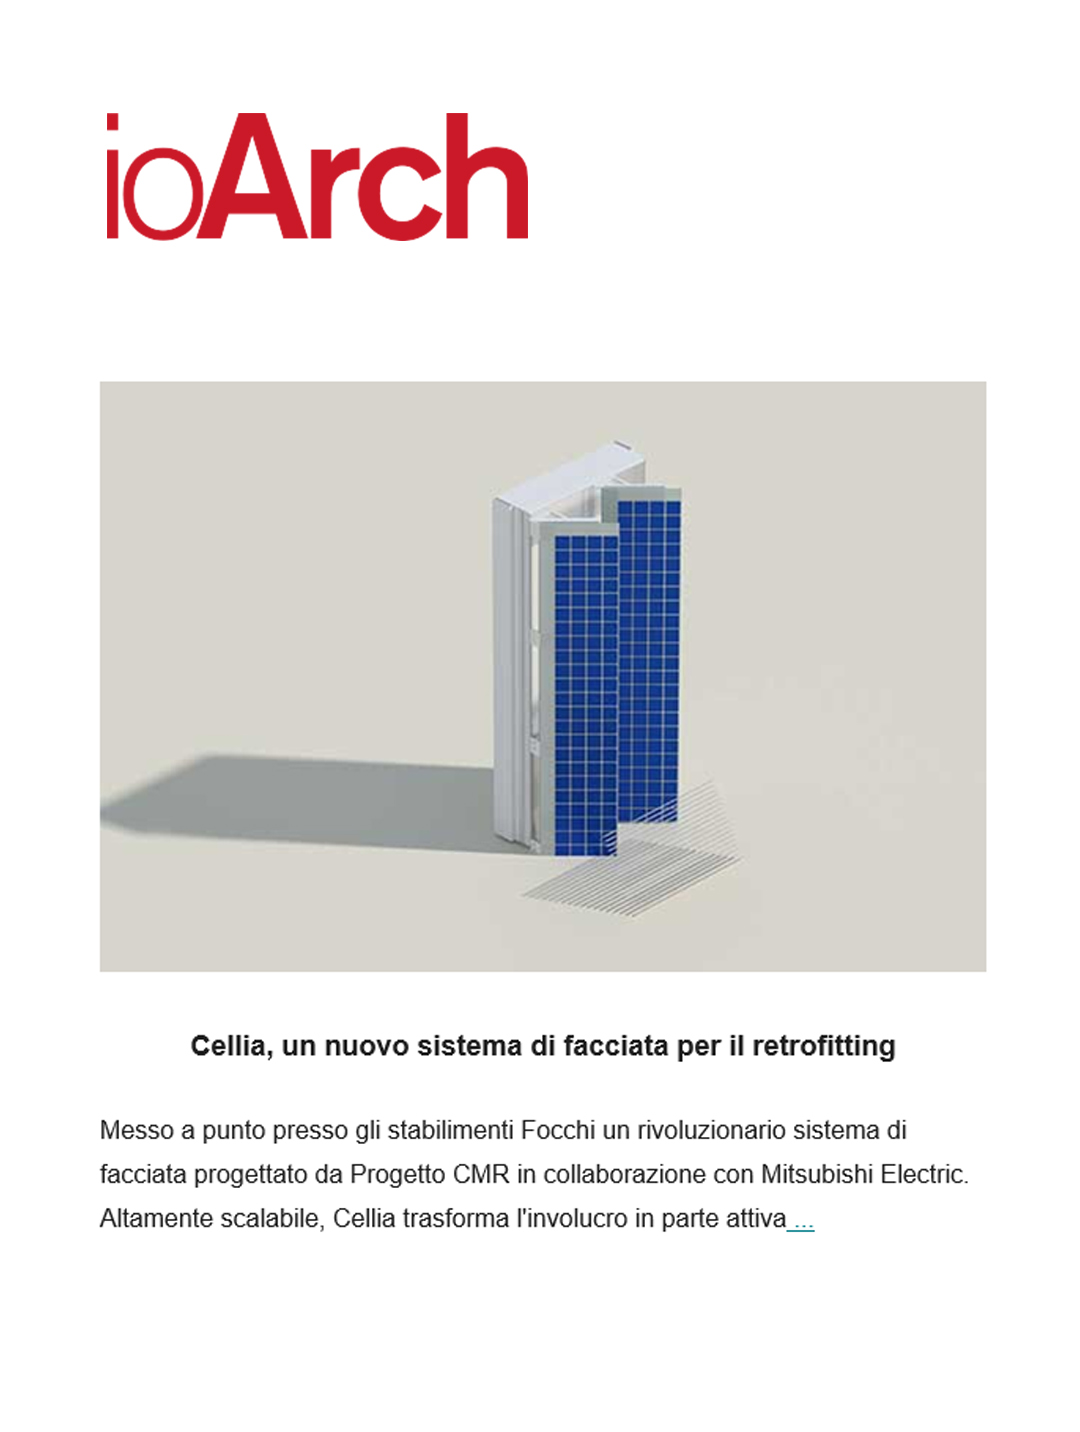 Cellia®, il sistema di facciata di Progetto CMR e Focchi per il retrofitting